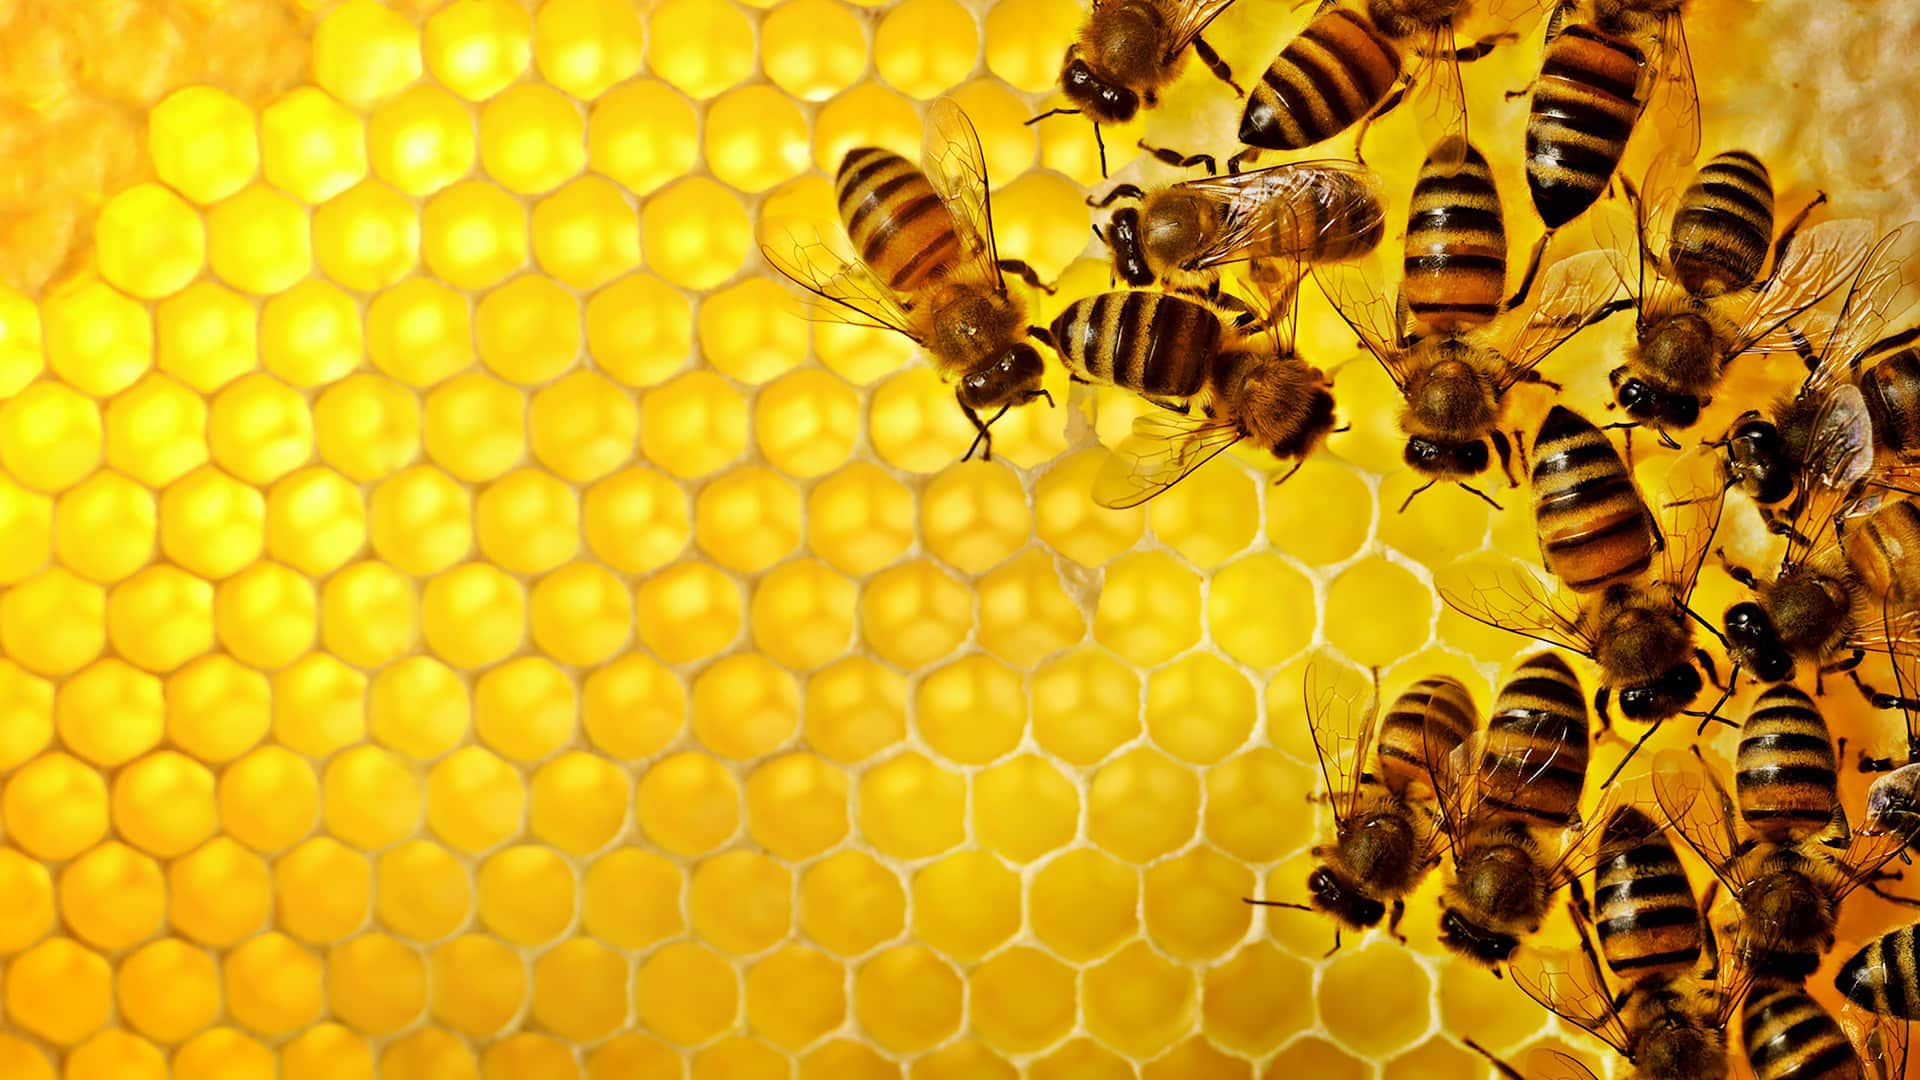 Ovisno o području svijeta, broj pčela je smanjen za 30 do 90%: njihov rad utiče na preko 75% usjeva hrane na planeti i njihov nestanak može izazvati krizu bez presedana (Foto: Mike Black/iStock)